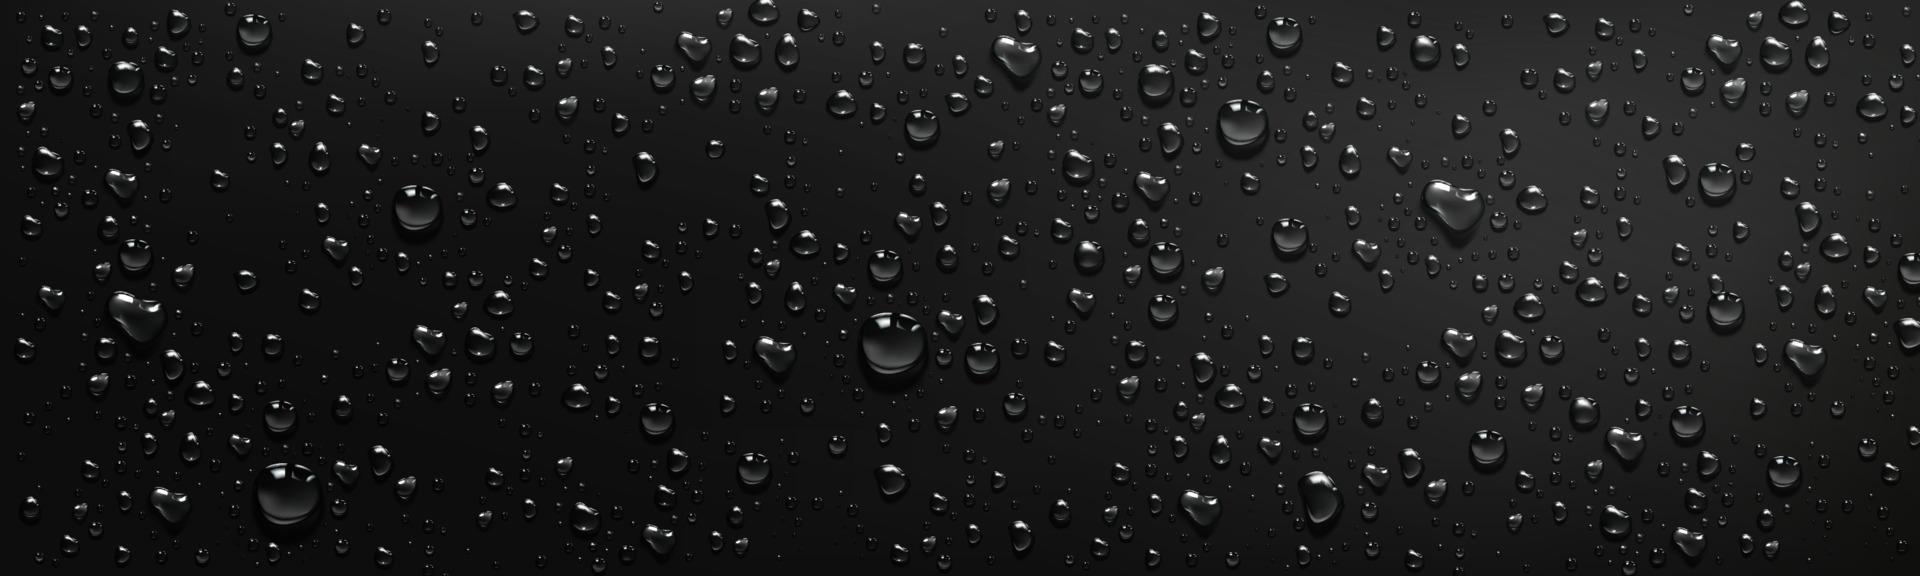 vattendroppar på svart bakgrund vektor